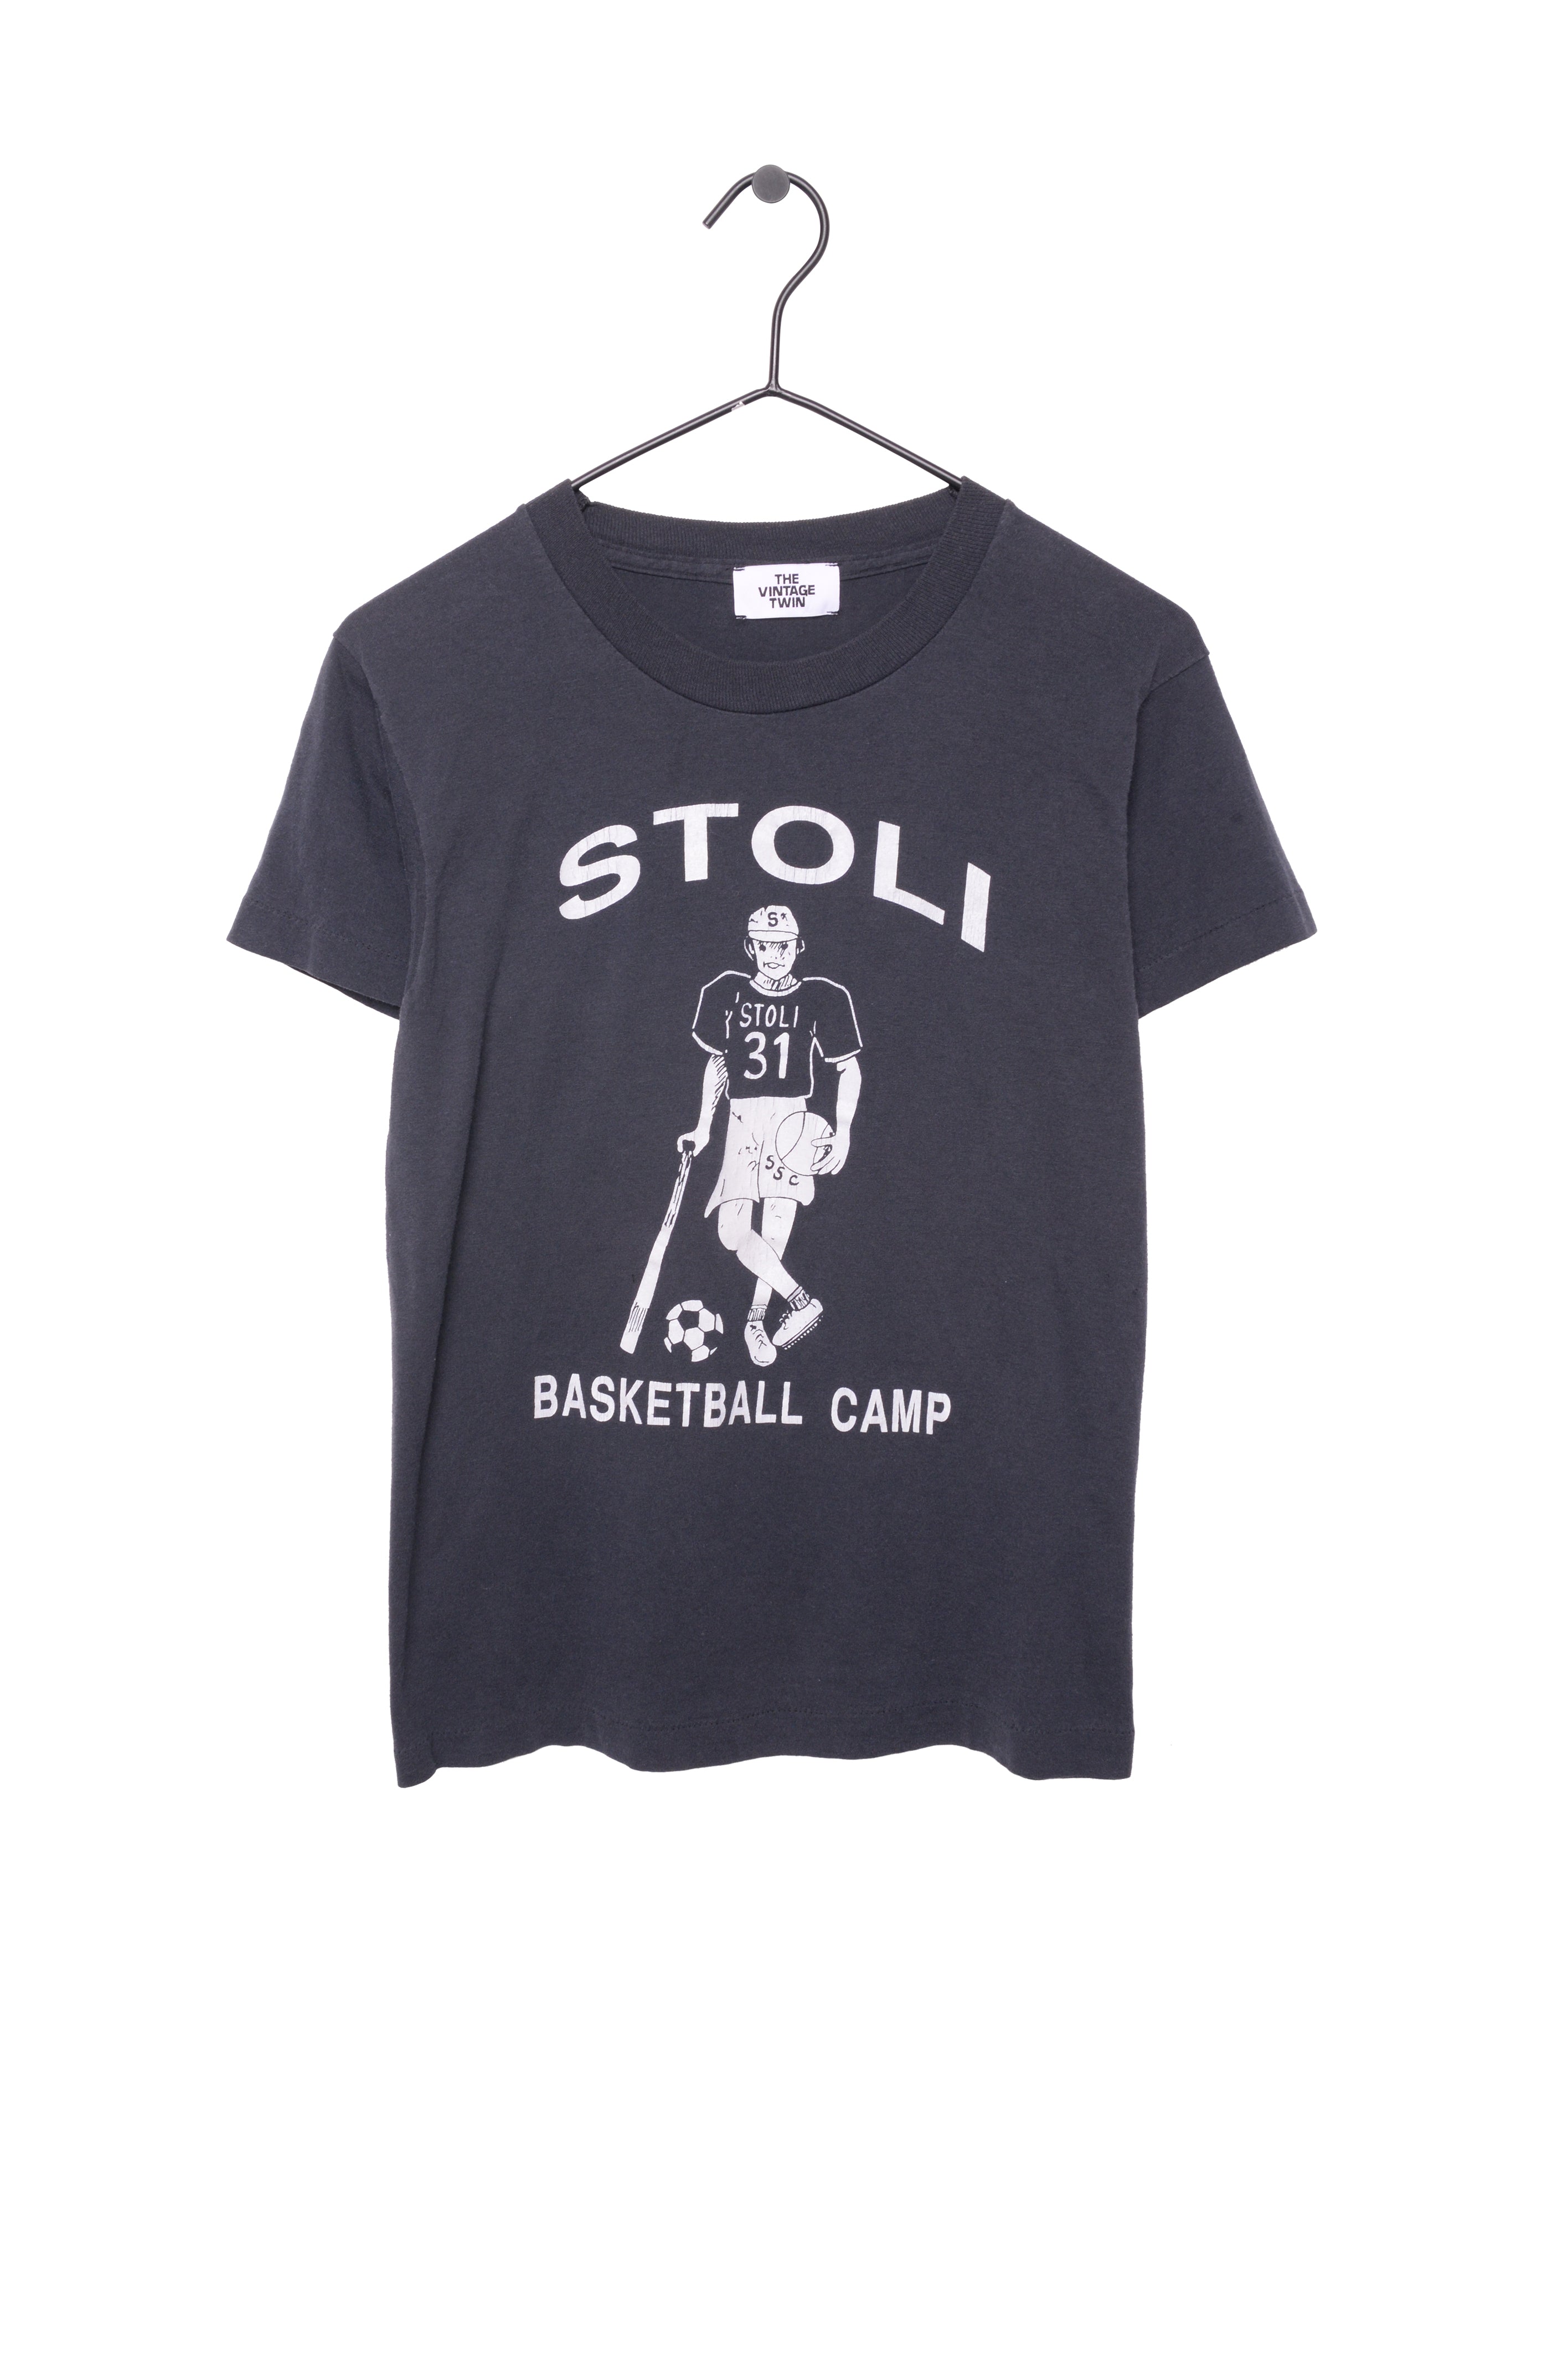 Basketball Camp Shirts  Basketball camp shirts, Basketball camp, Camp shirt  designs